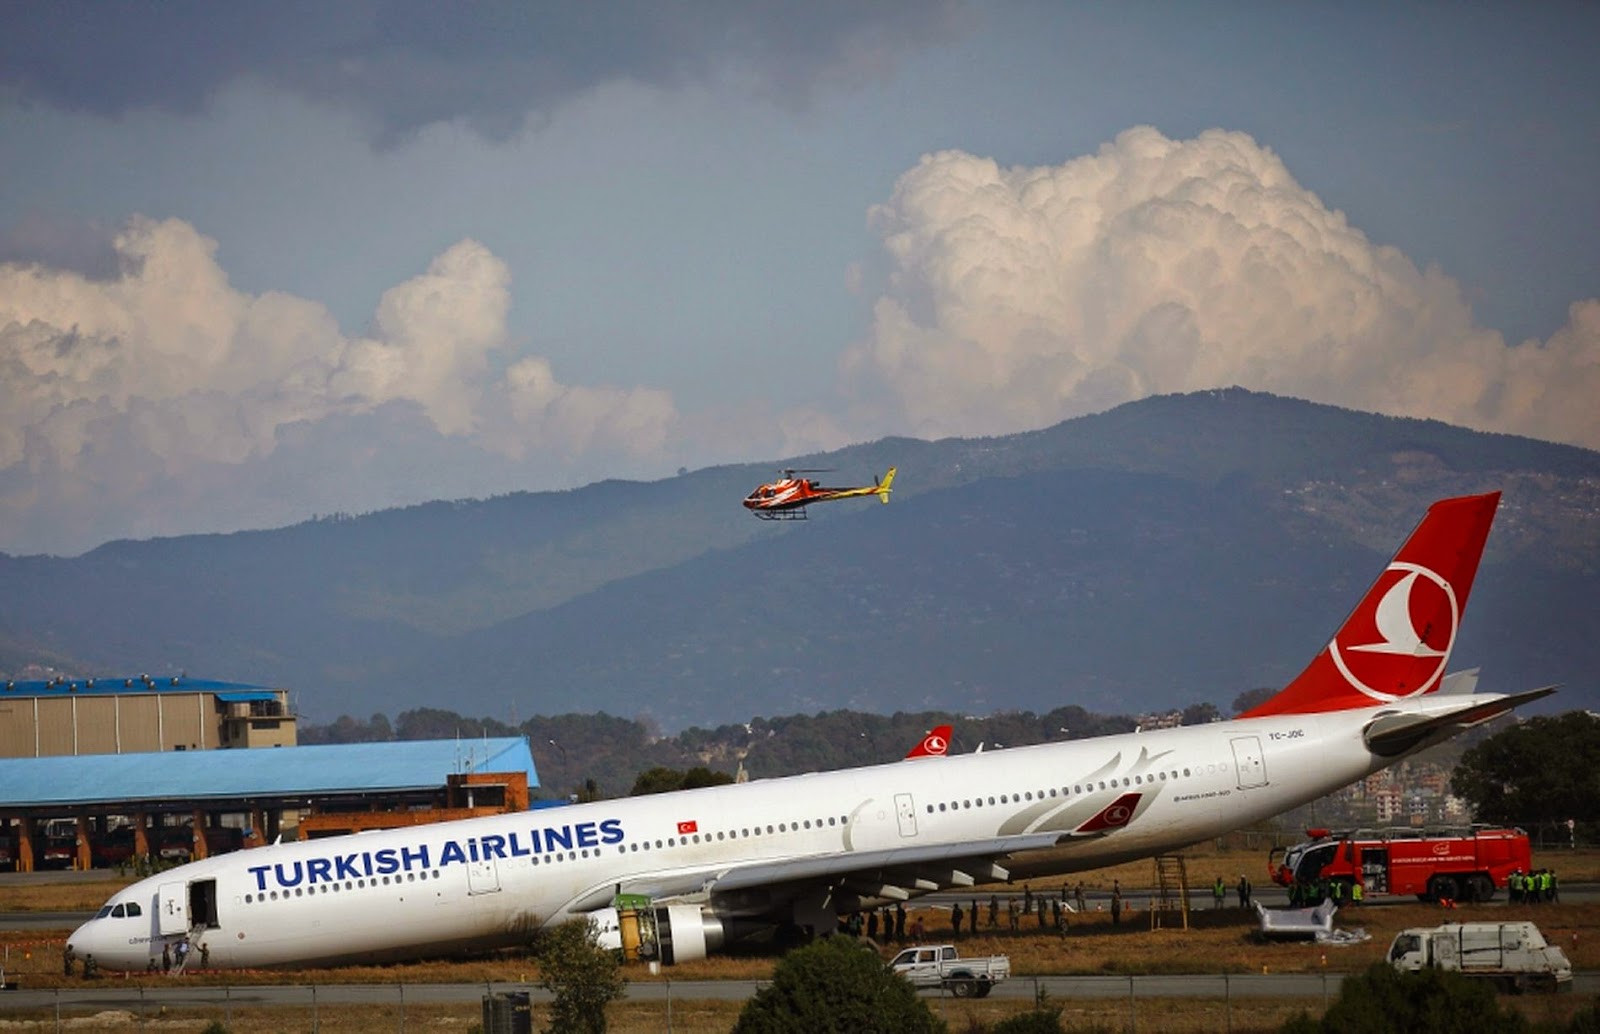  Gambar Pesawat Turkish Airline Terbabas Ketika Mendarat 